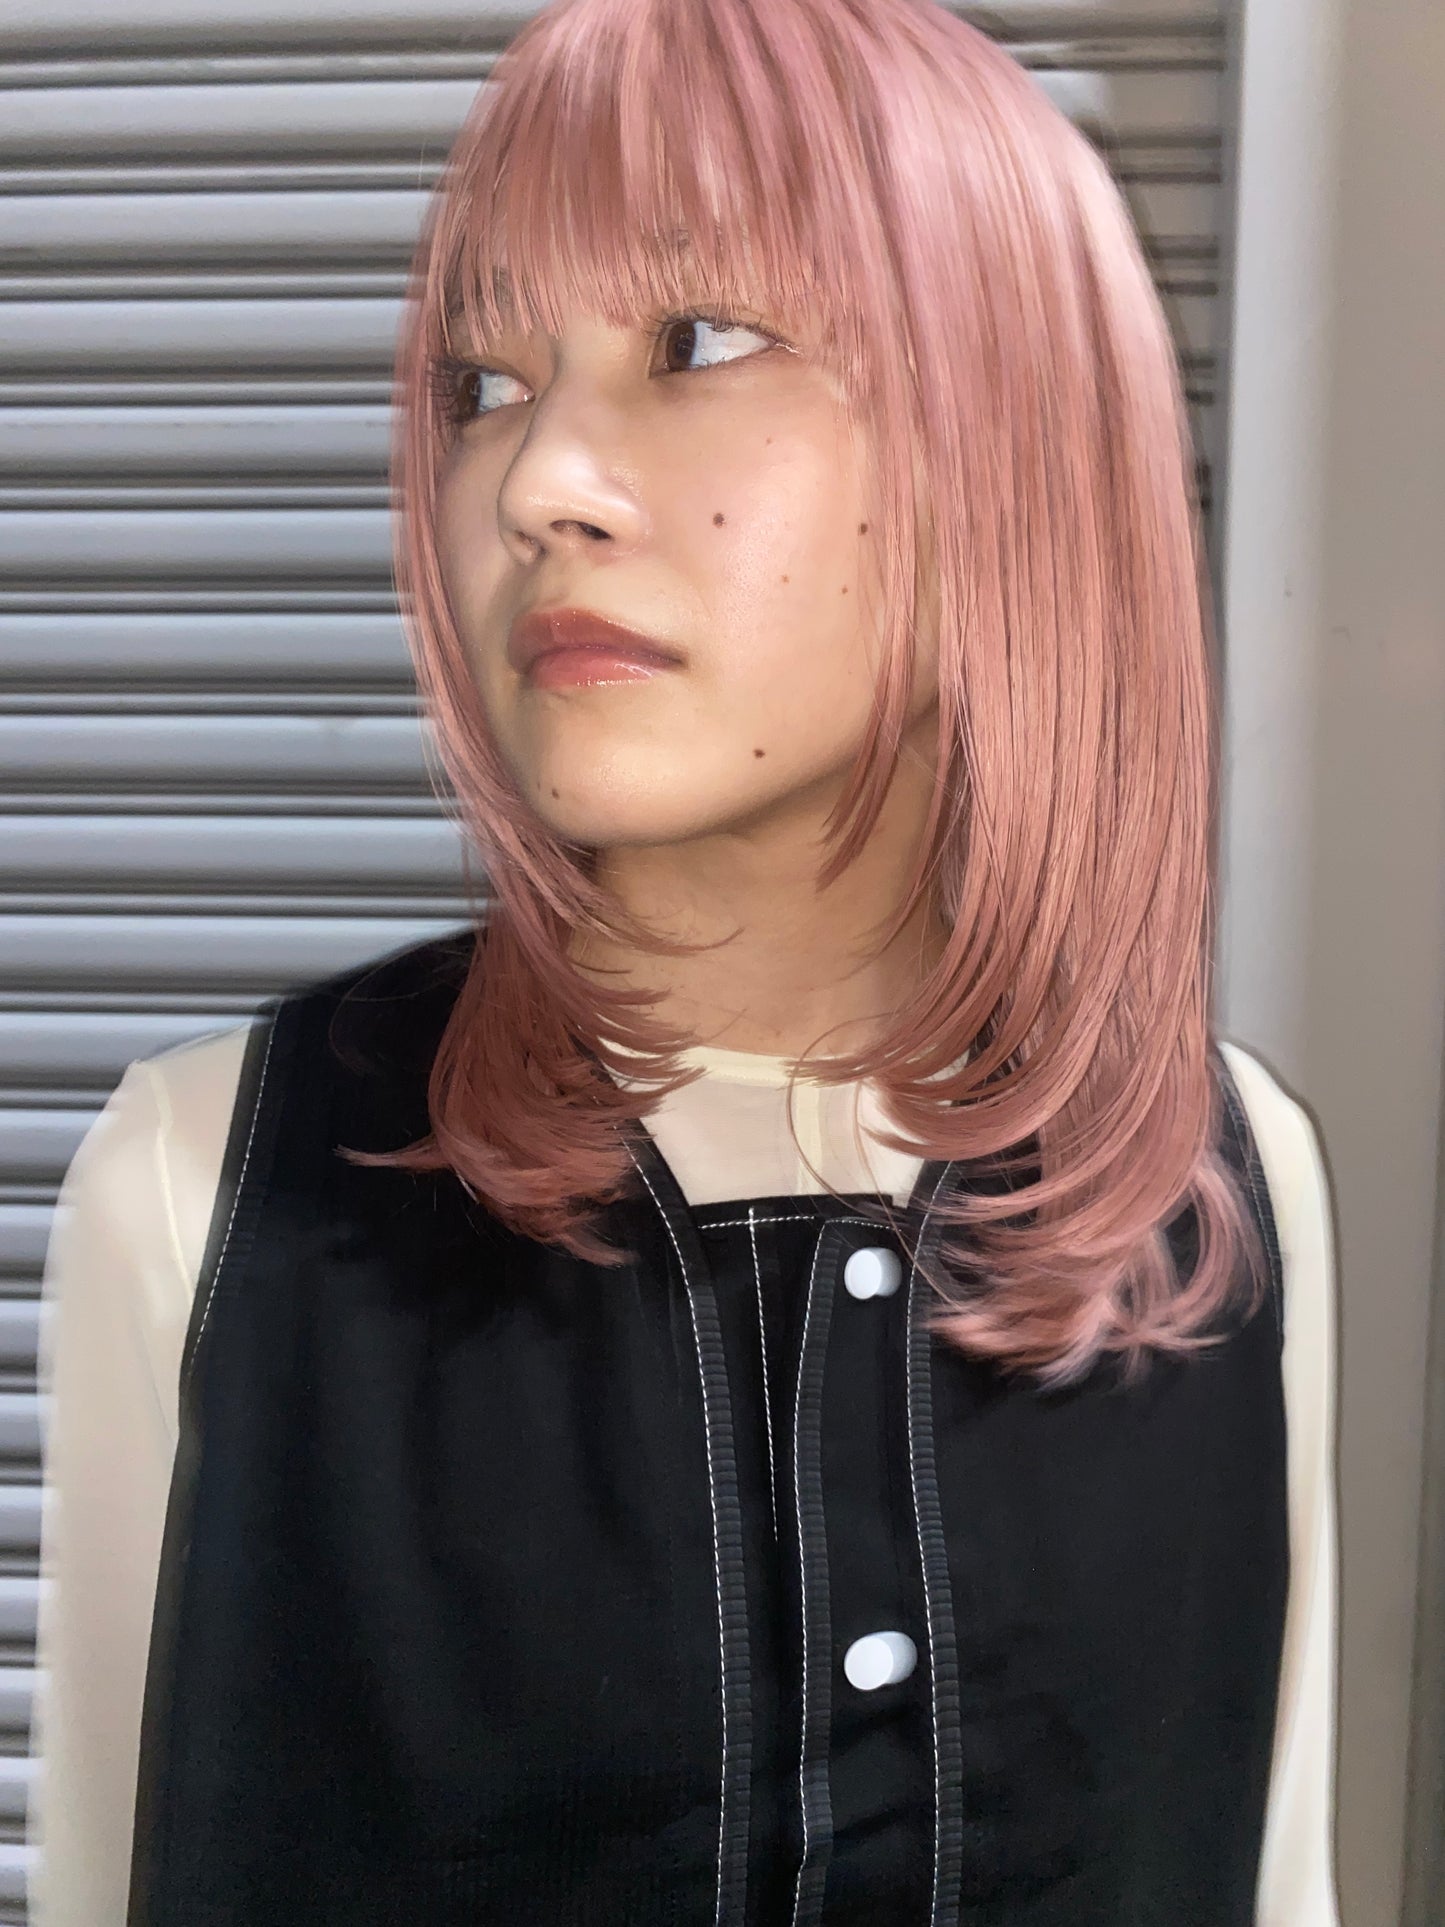 【ピンク】ロッタレイヤーミディアム